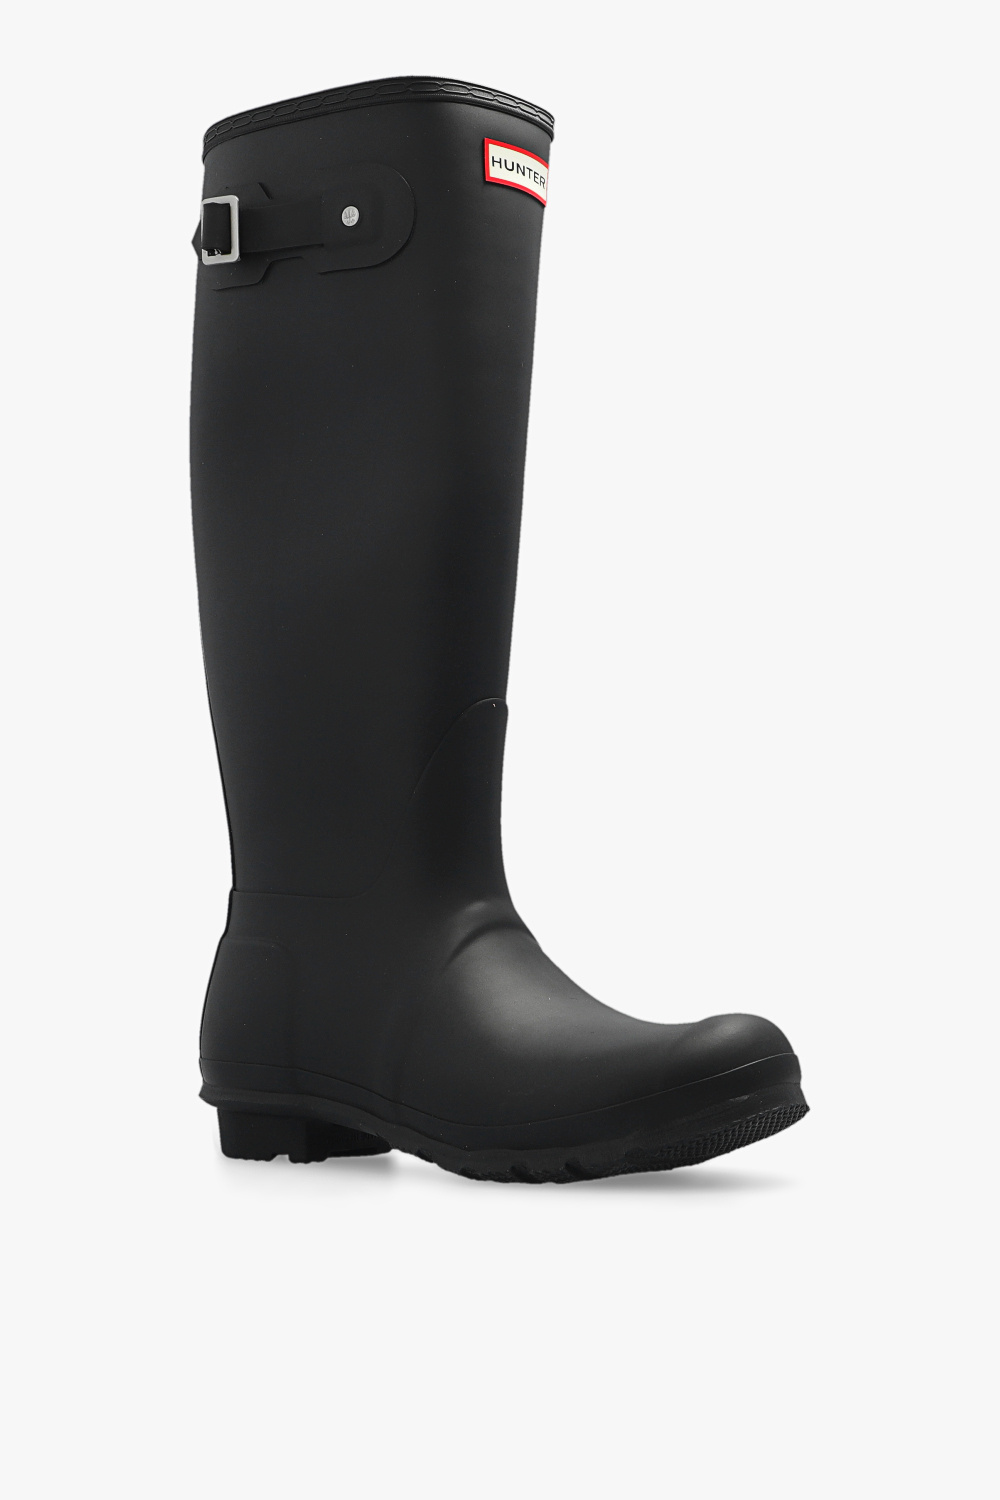 Louis Vuitton Women's 36 Black Rubber Rainboots Tall Rain Boots